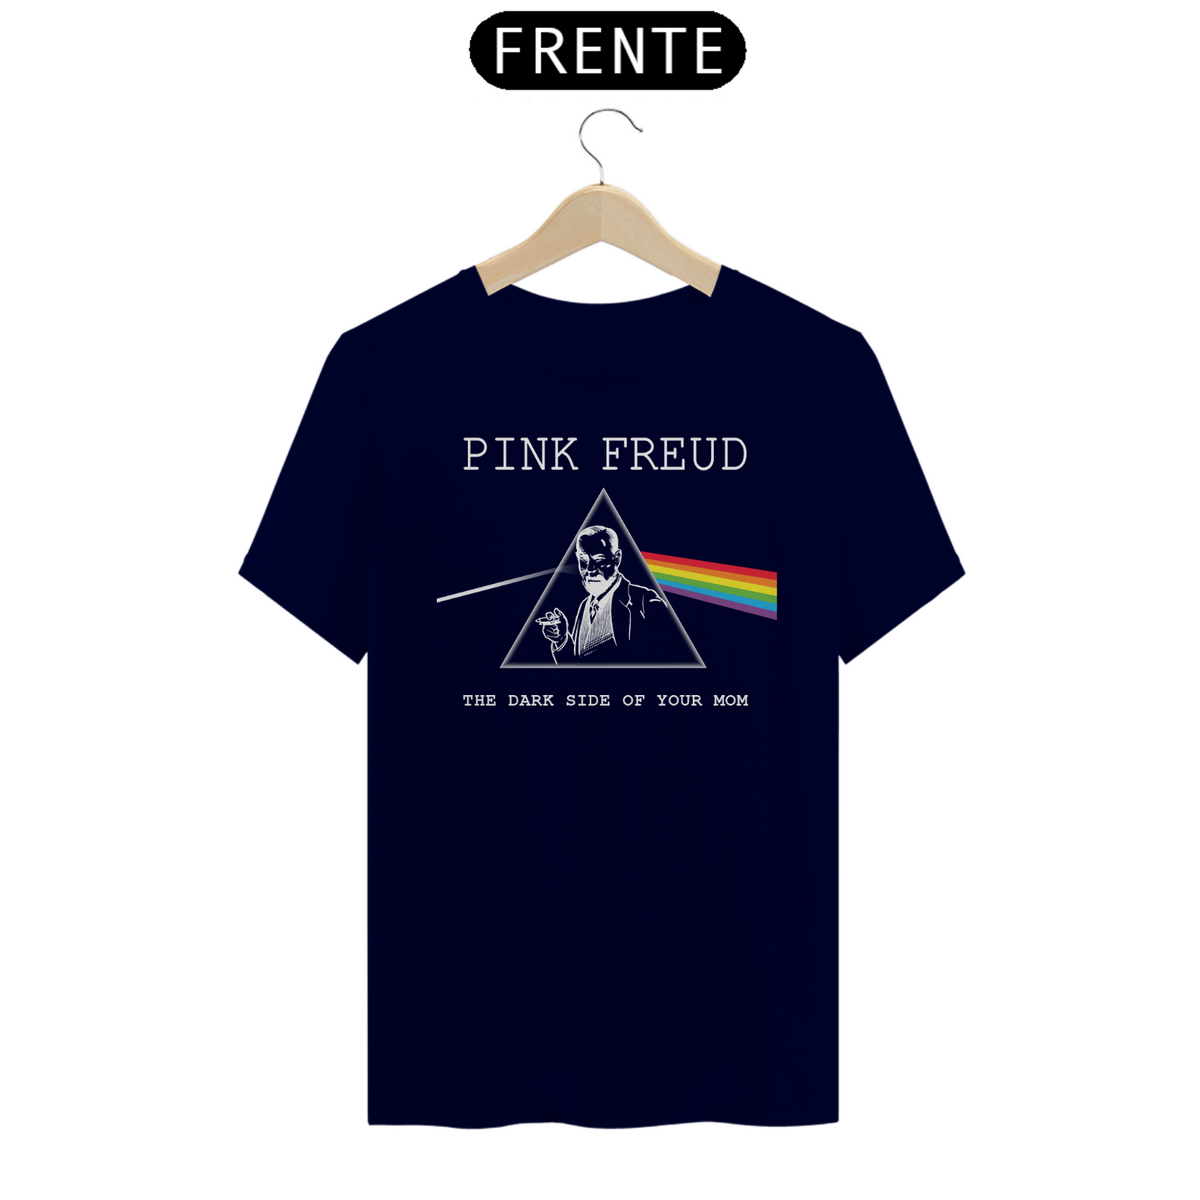 Nome do produto: Pink Freud (cores escuras)